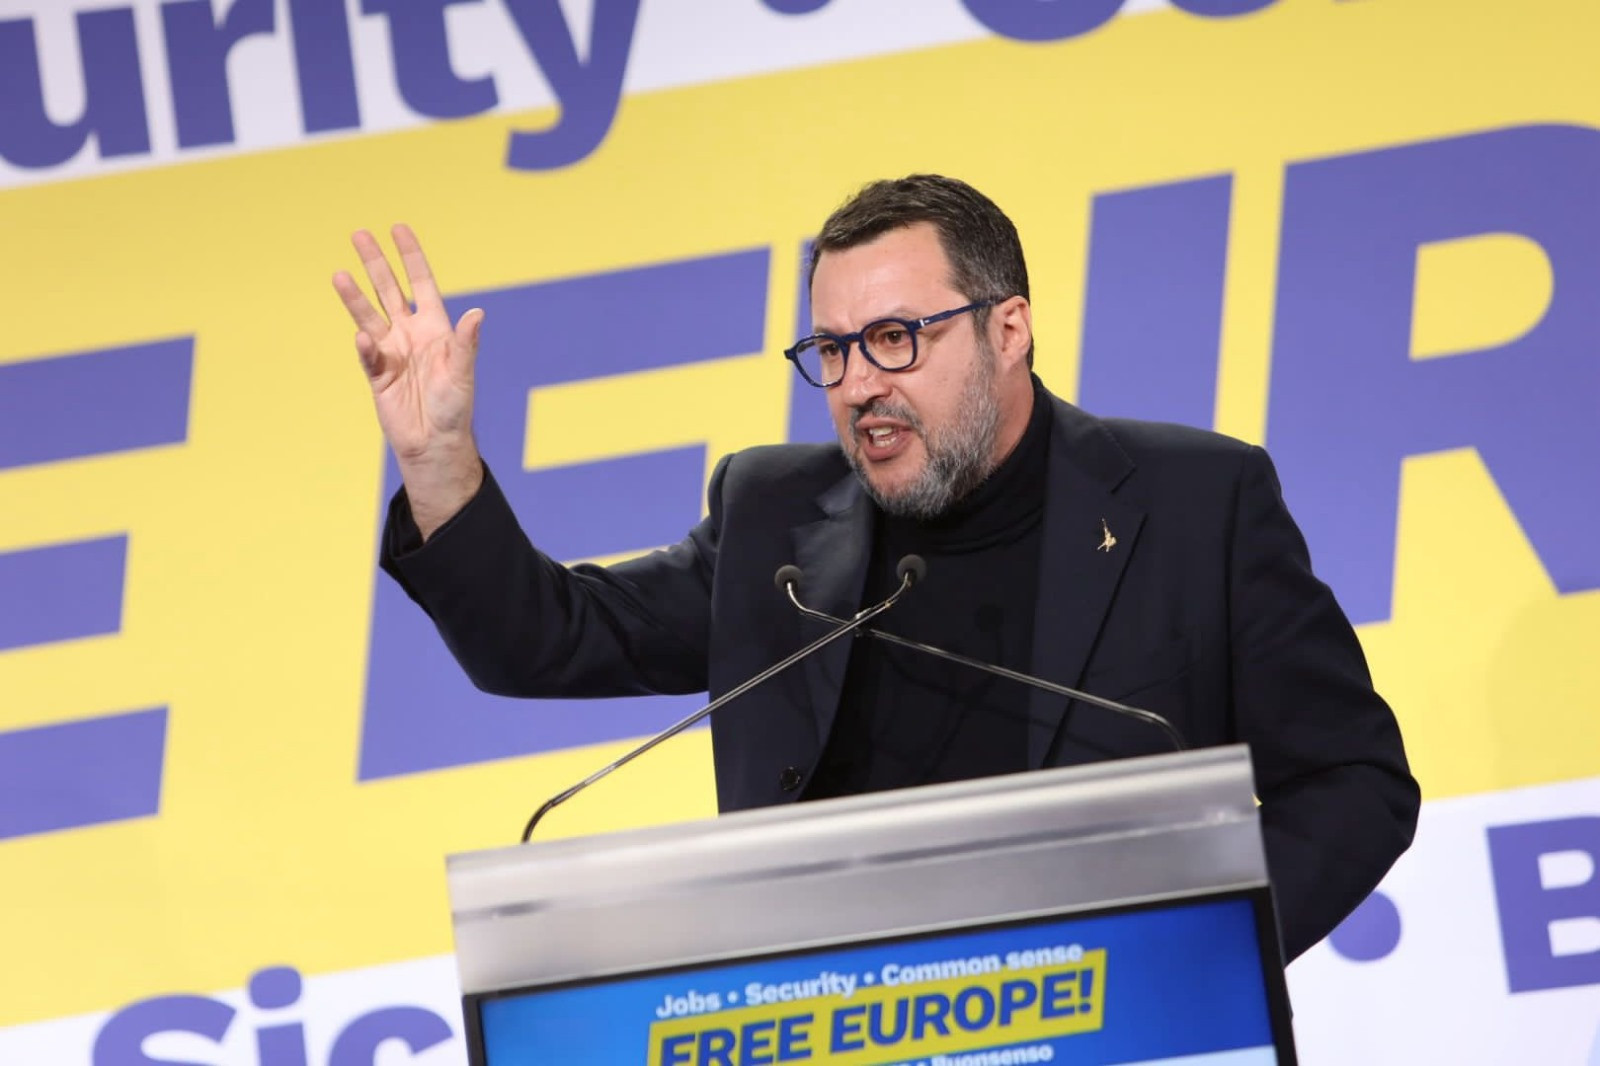 Matteo Salvini / @matteosalvinimi sur X (ex-Twitter) La montée de l'extrême droite en Europe - Catherine Fieschi